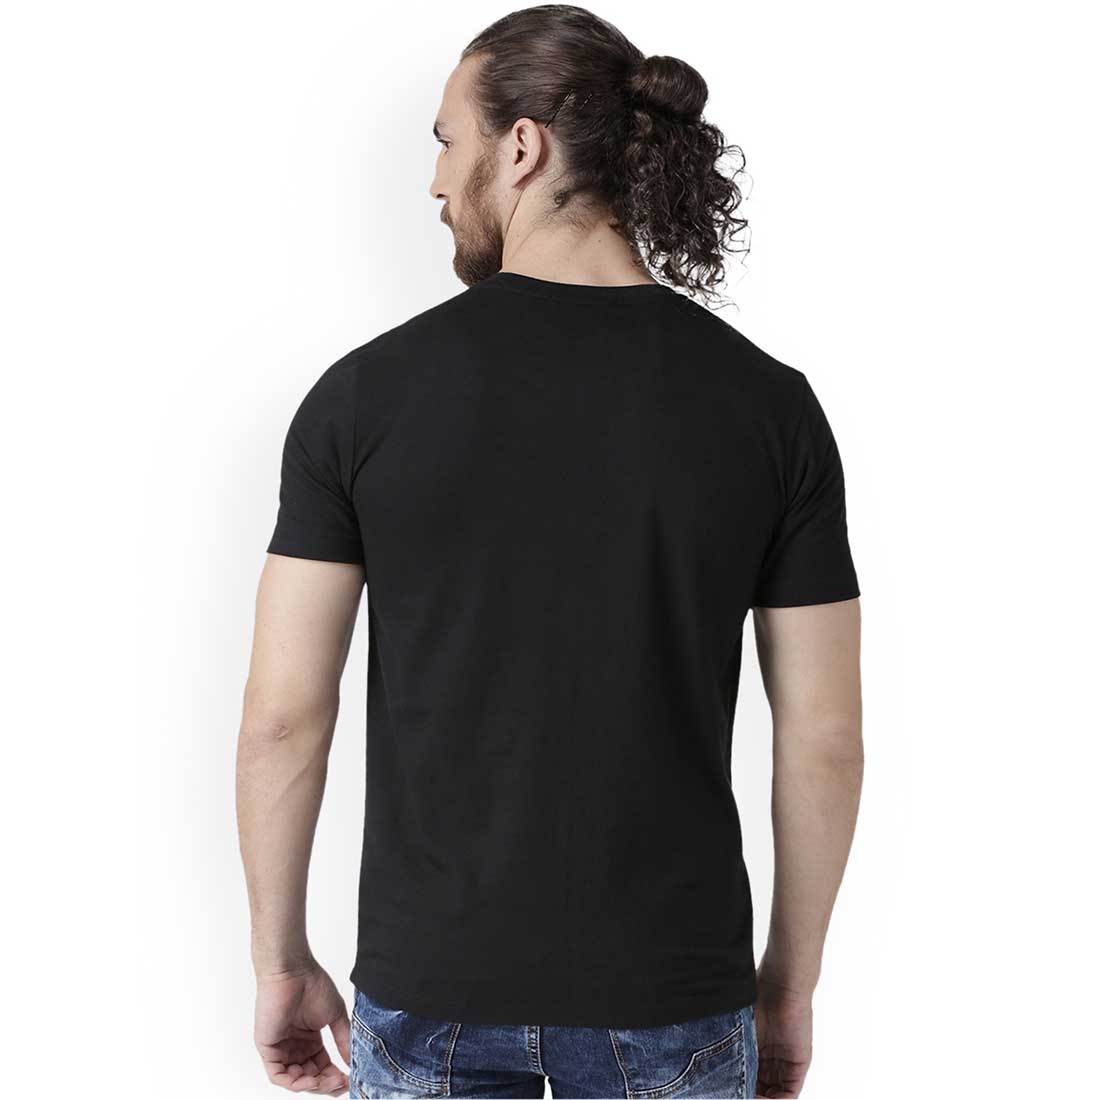 Hridoy Er Rong Black Men T-Shirt